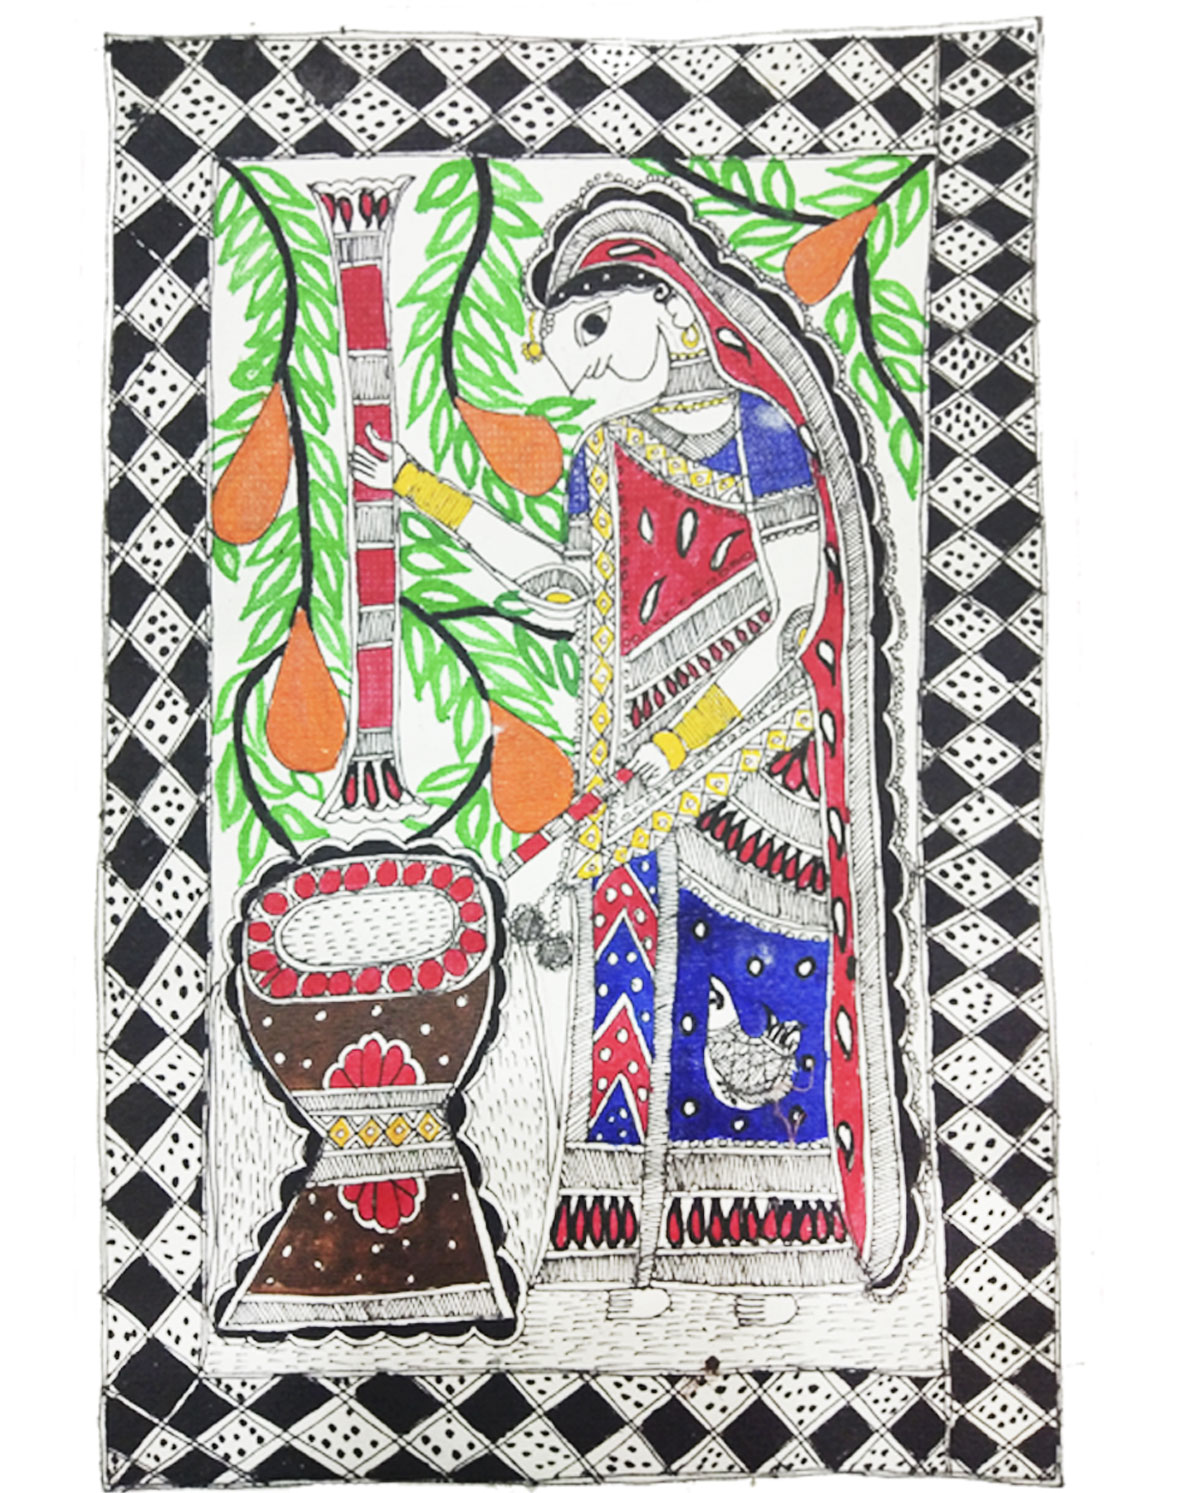 Mithila Lady-Madhubani Painting
